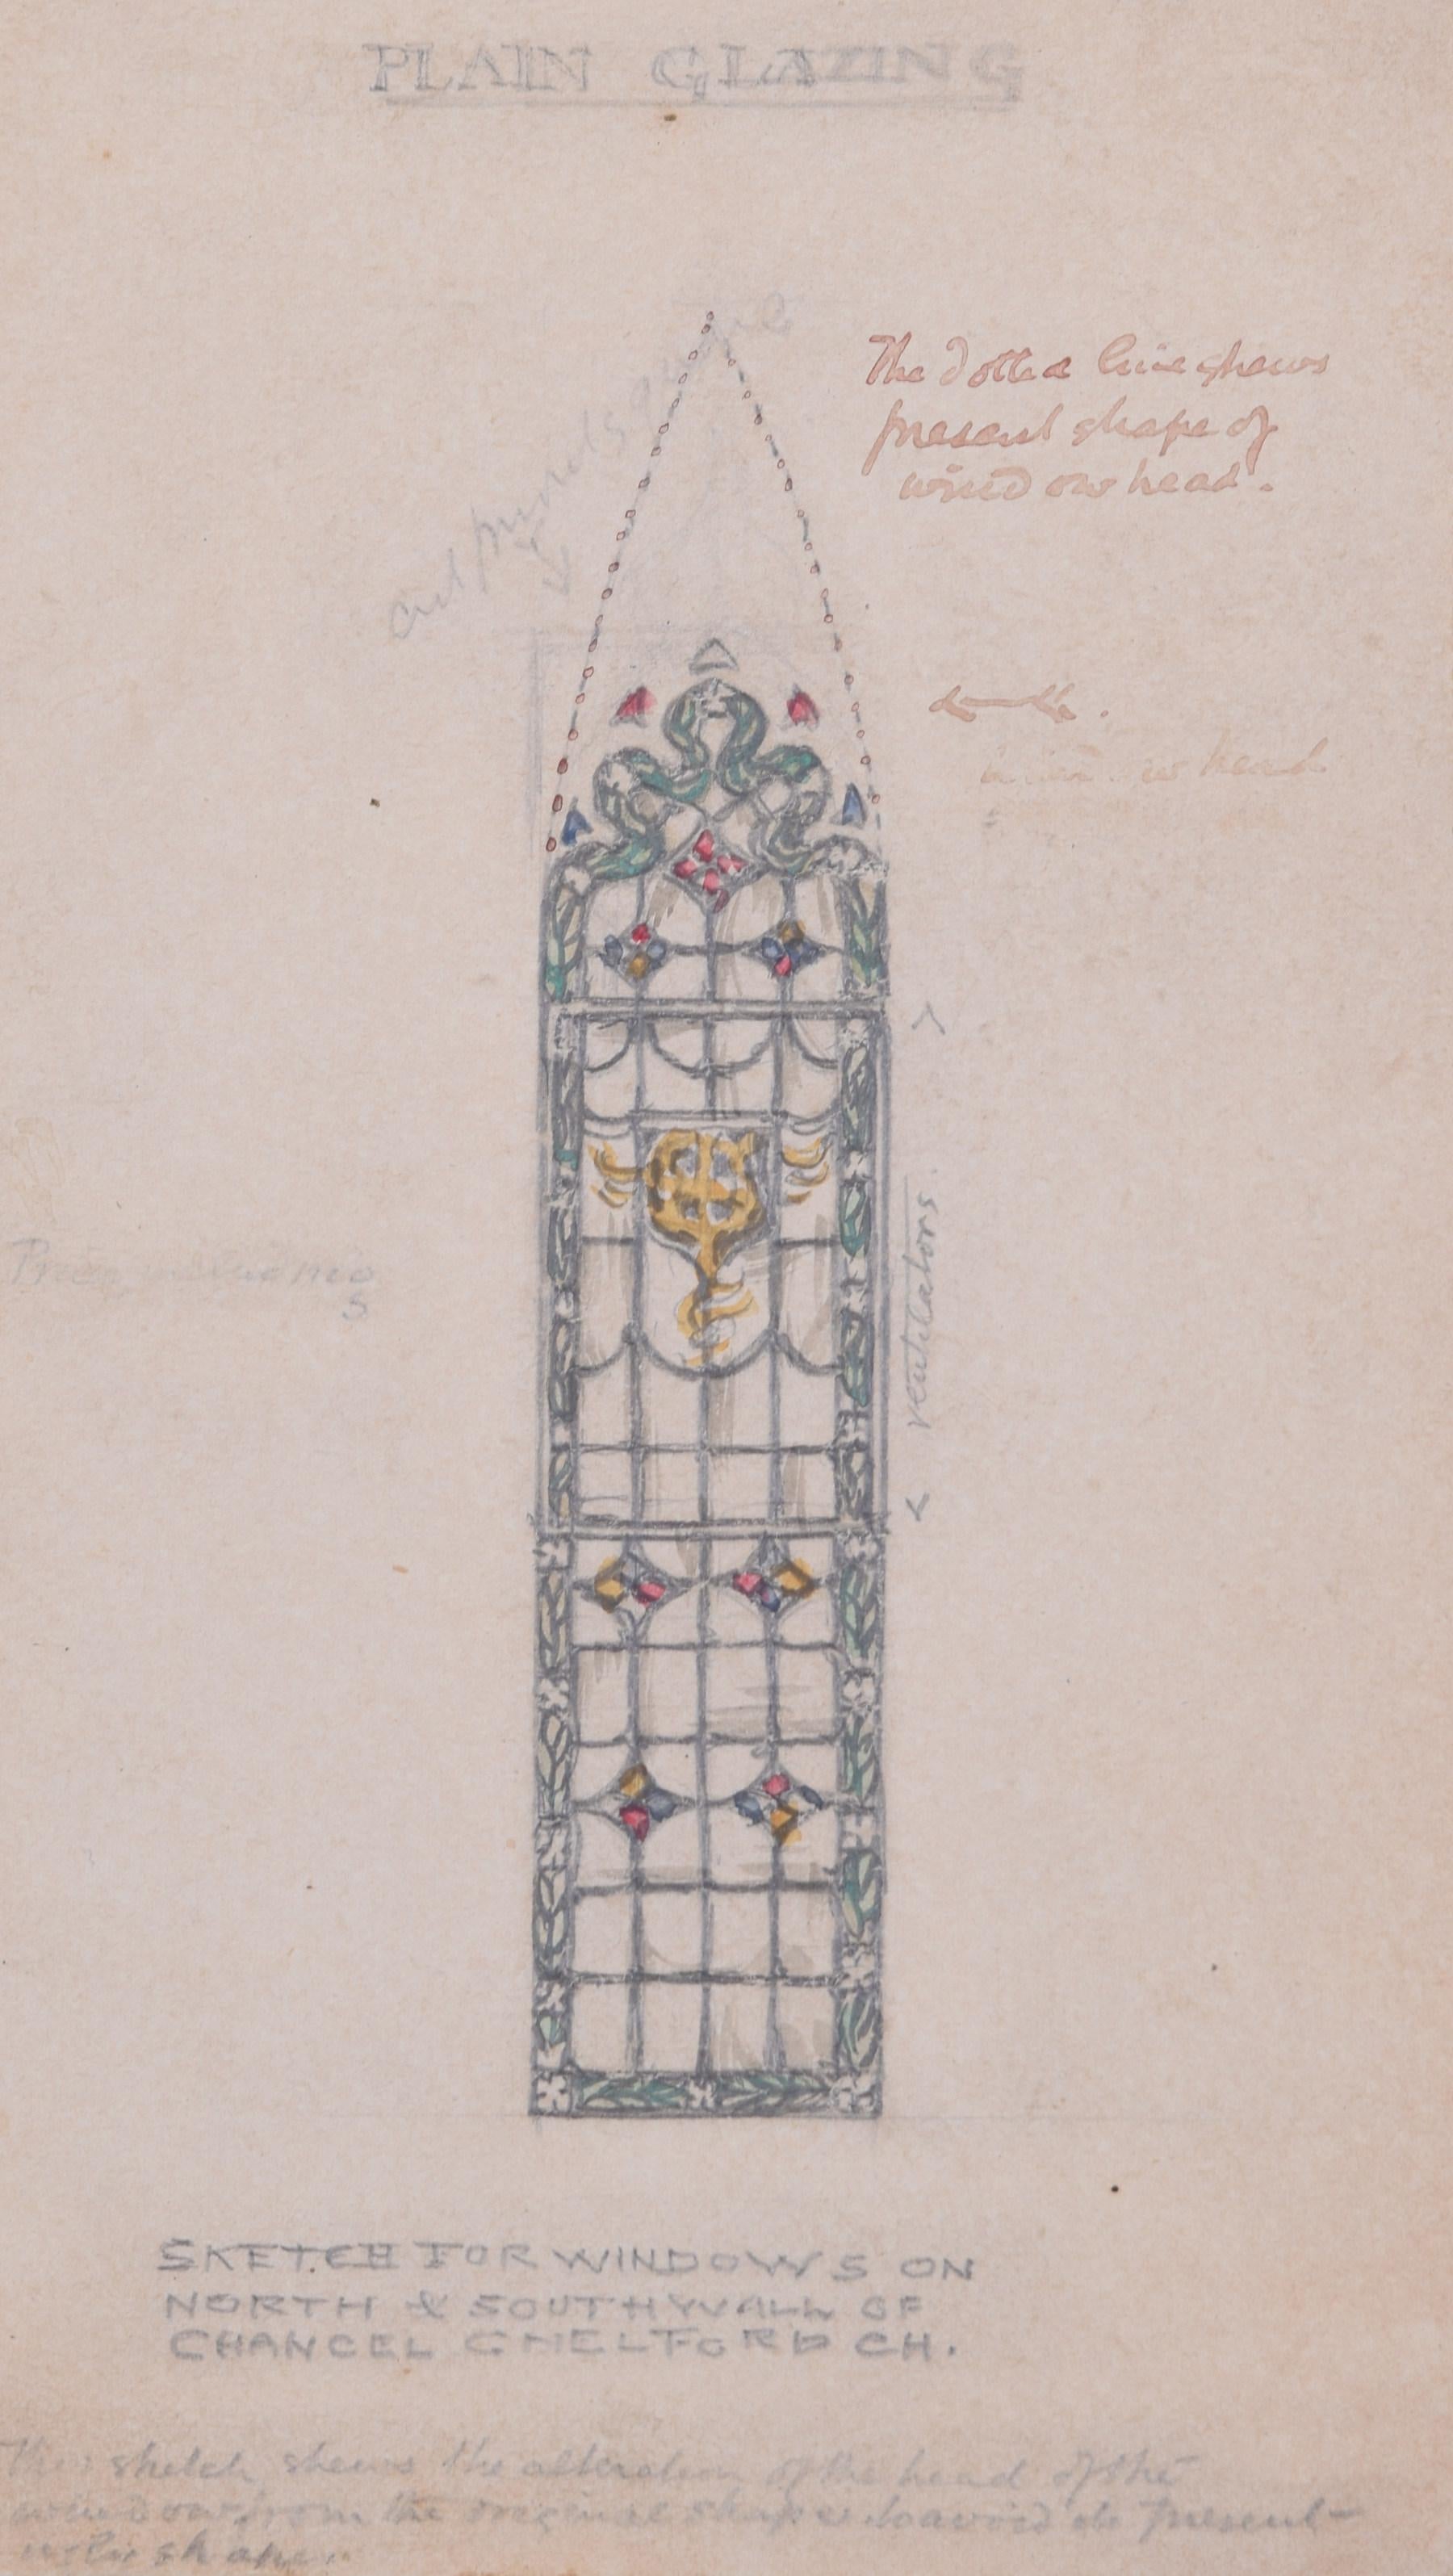 Um mehr zu sehen, scrollen Sie nach unten zu "Mehr von diesem Sellers" und klicken Sie darunter auf "Alle von diesem Sellers sehen". 

Reginald Hallward (1858 - 1948)
Glasmalereigestaltung für die Chelford Church's
Bleistift und Gouache
12 x 7